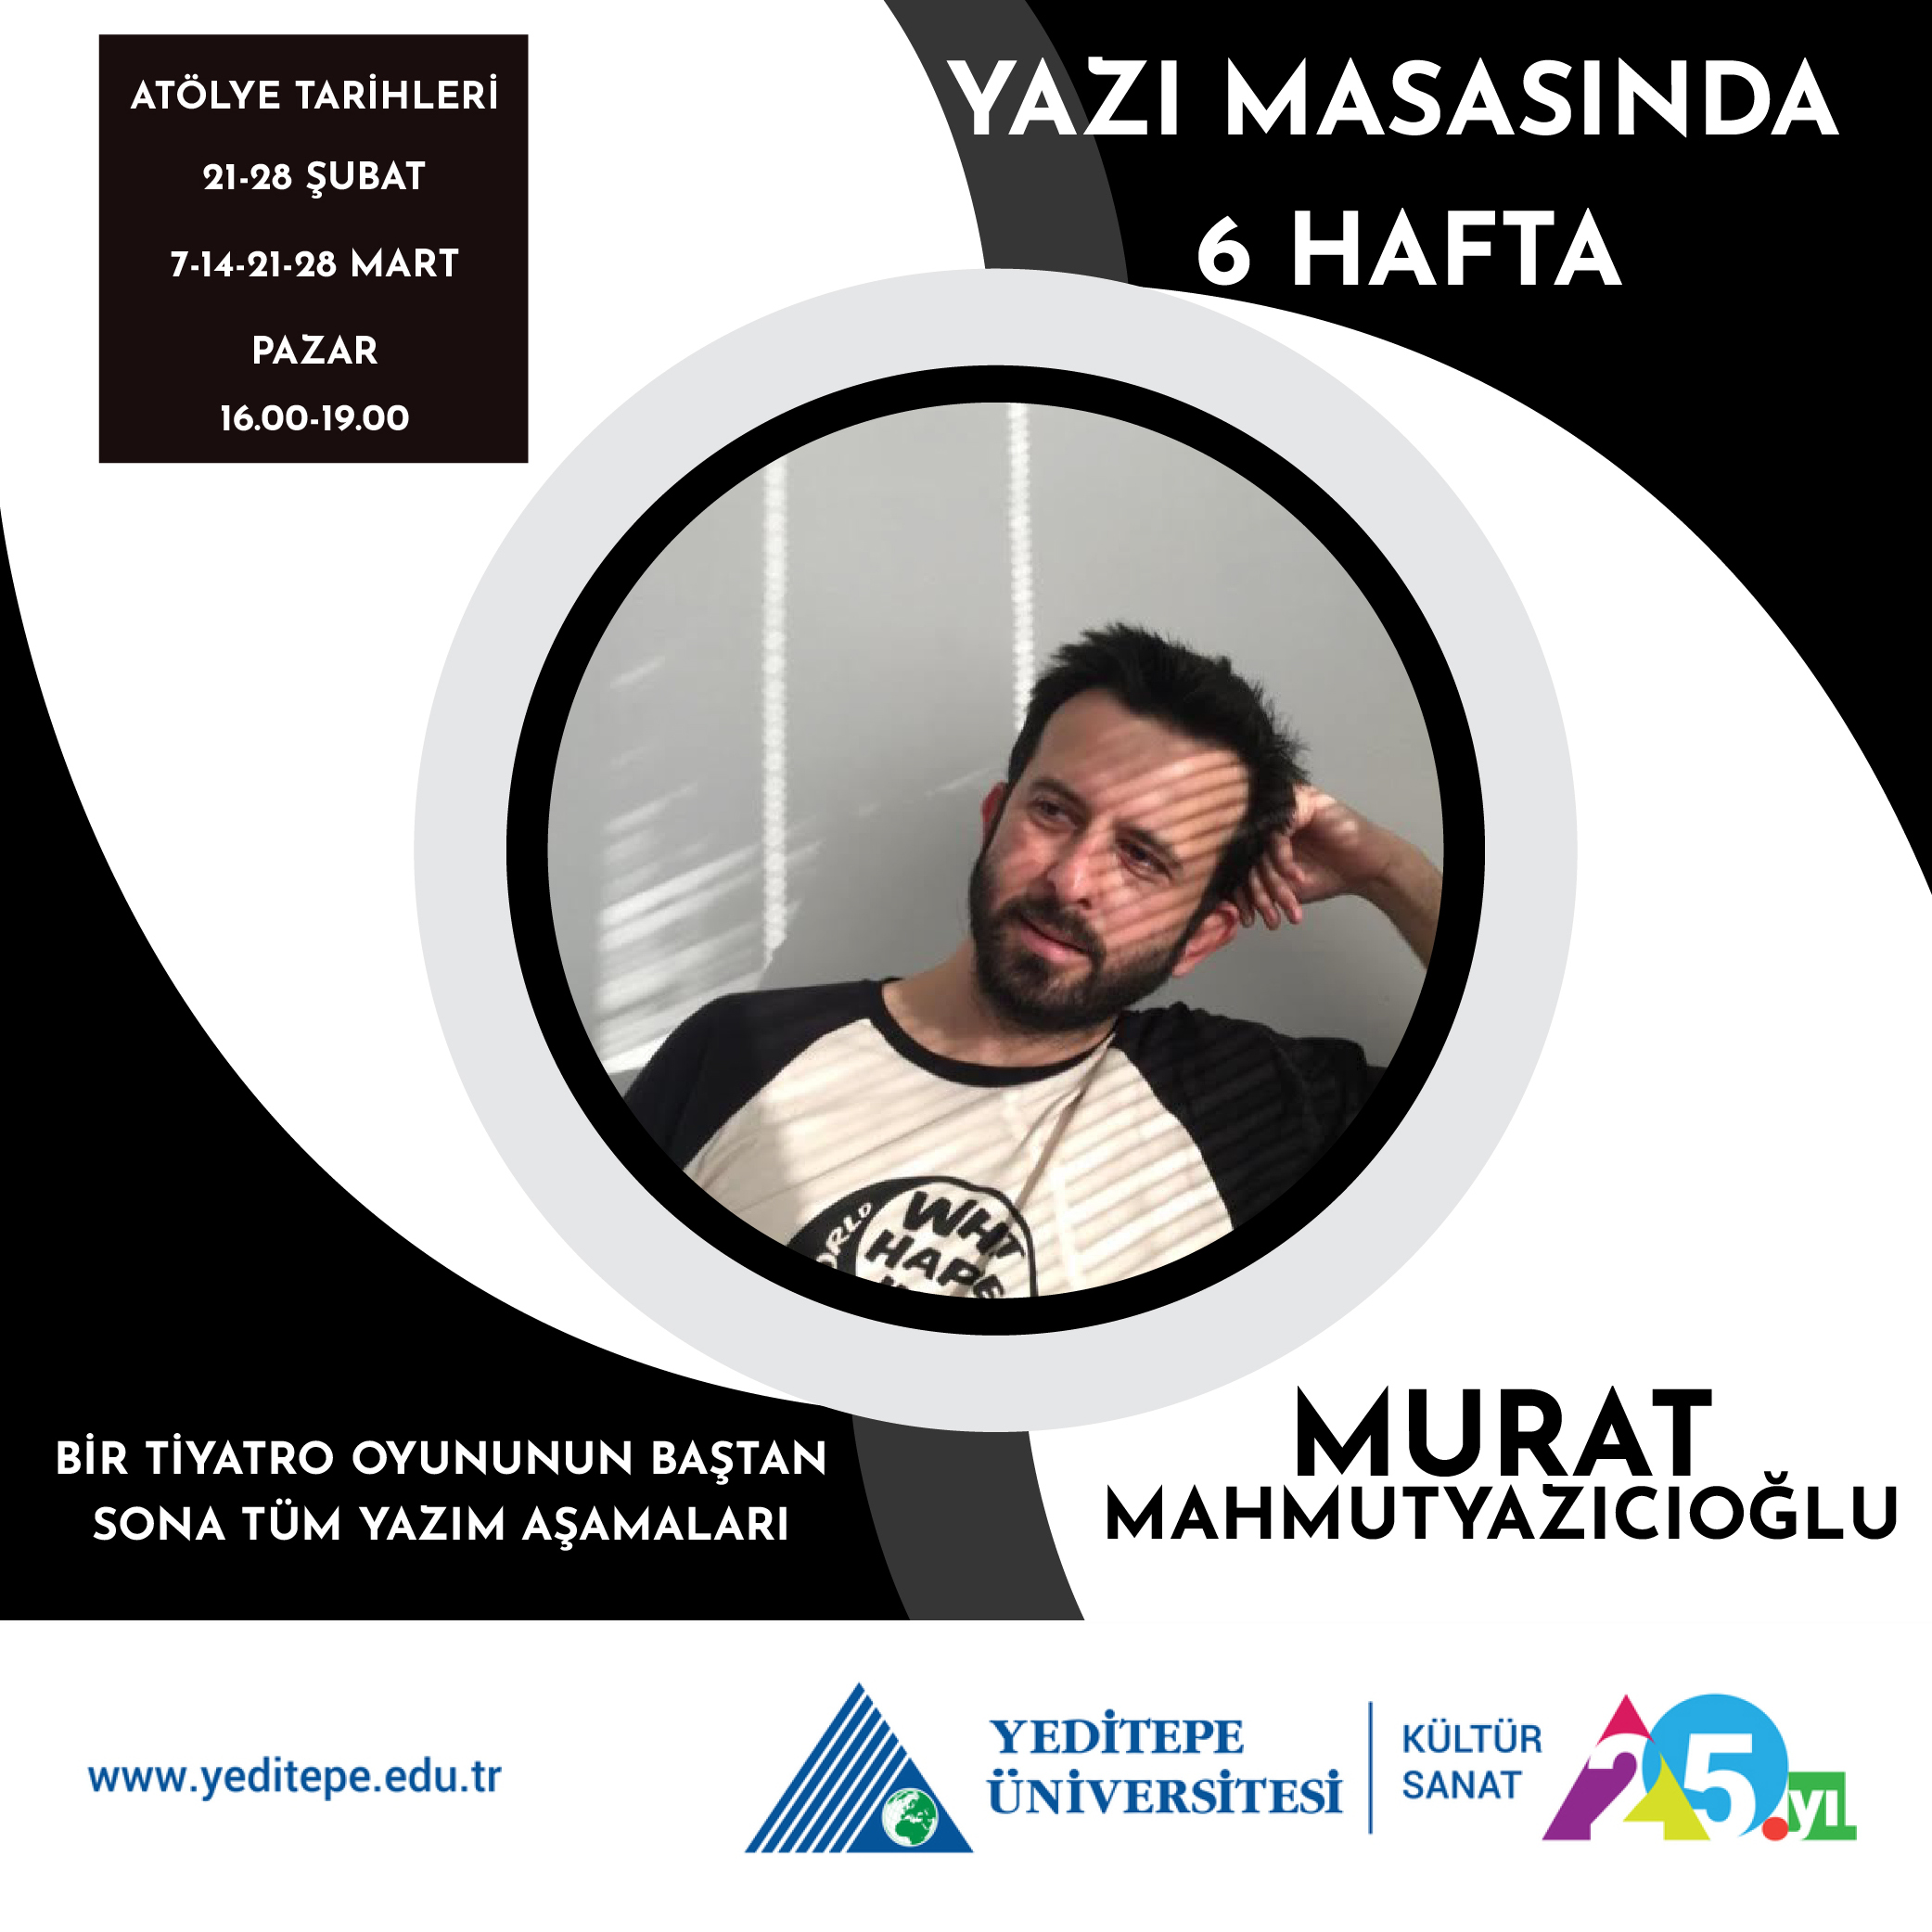 Murat Mahmutyazıcıoğlu ile Yazı Masasında 6 Hafta